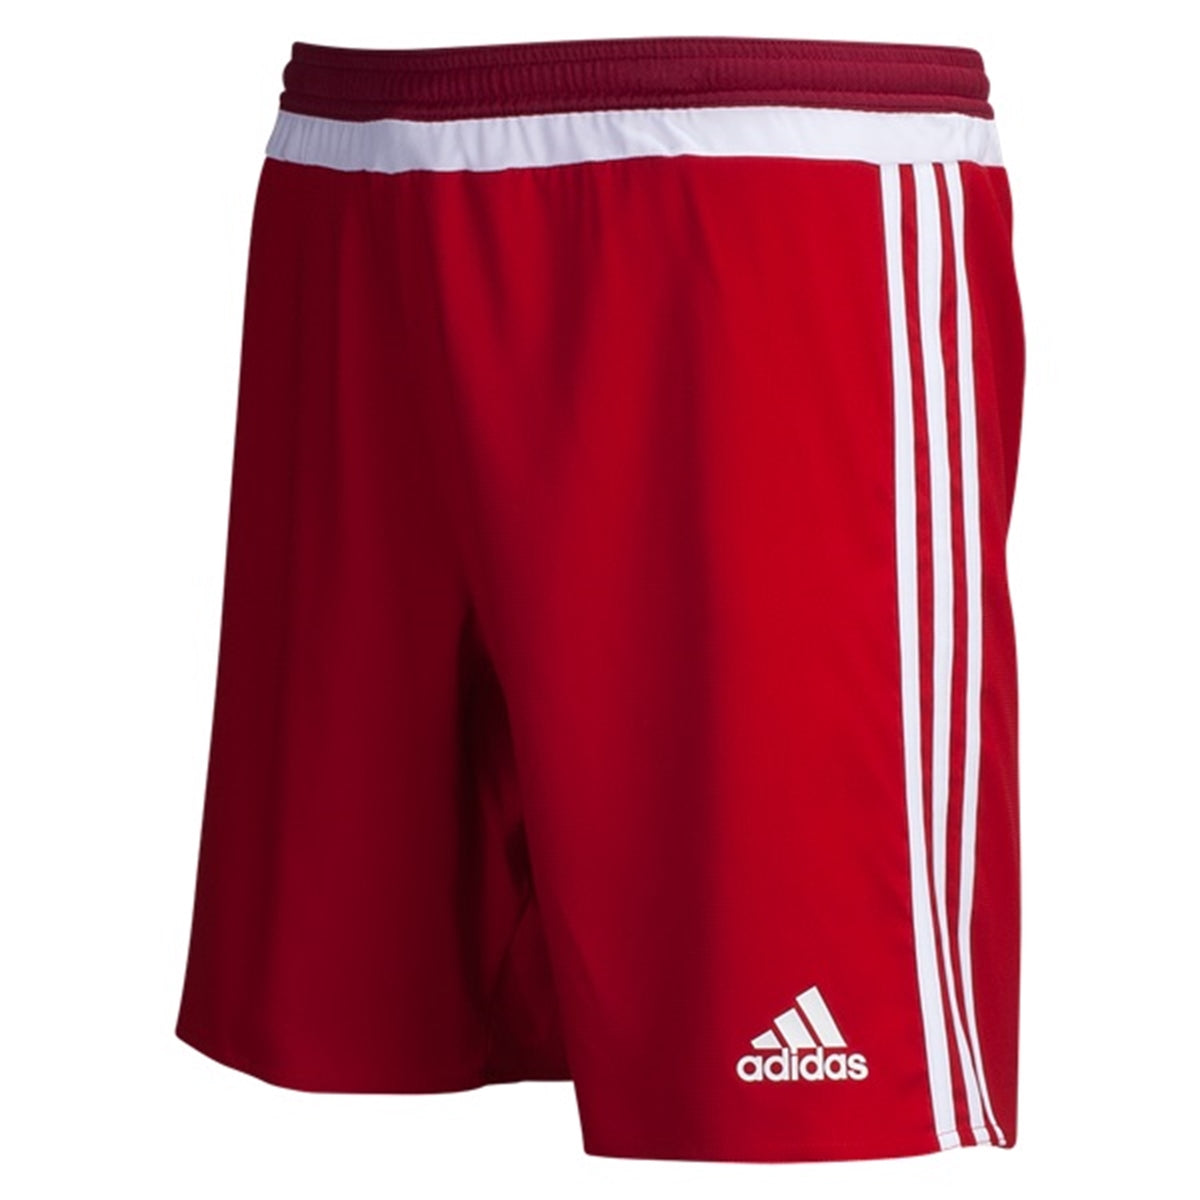 Adidas Boy Campeon 15 Youth Shorts